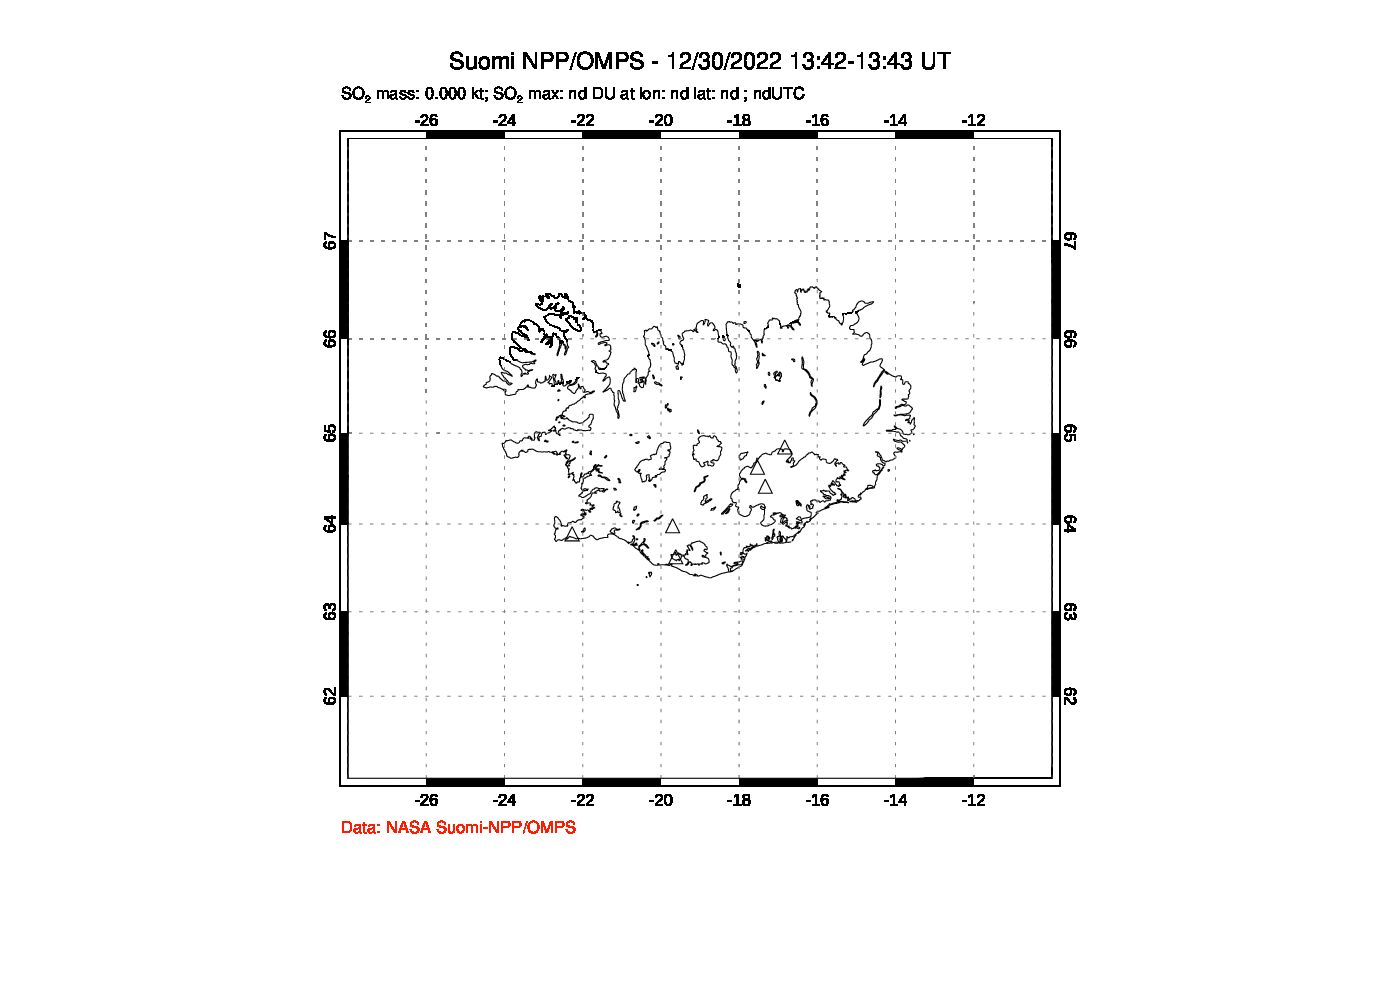 A sulfur dioxide image over Iceland on Dec 30, 2022.